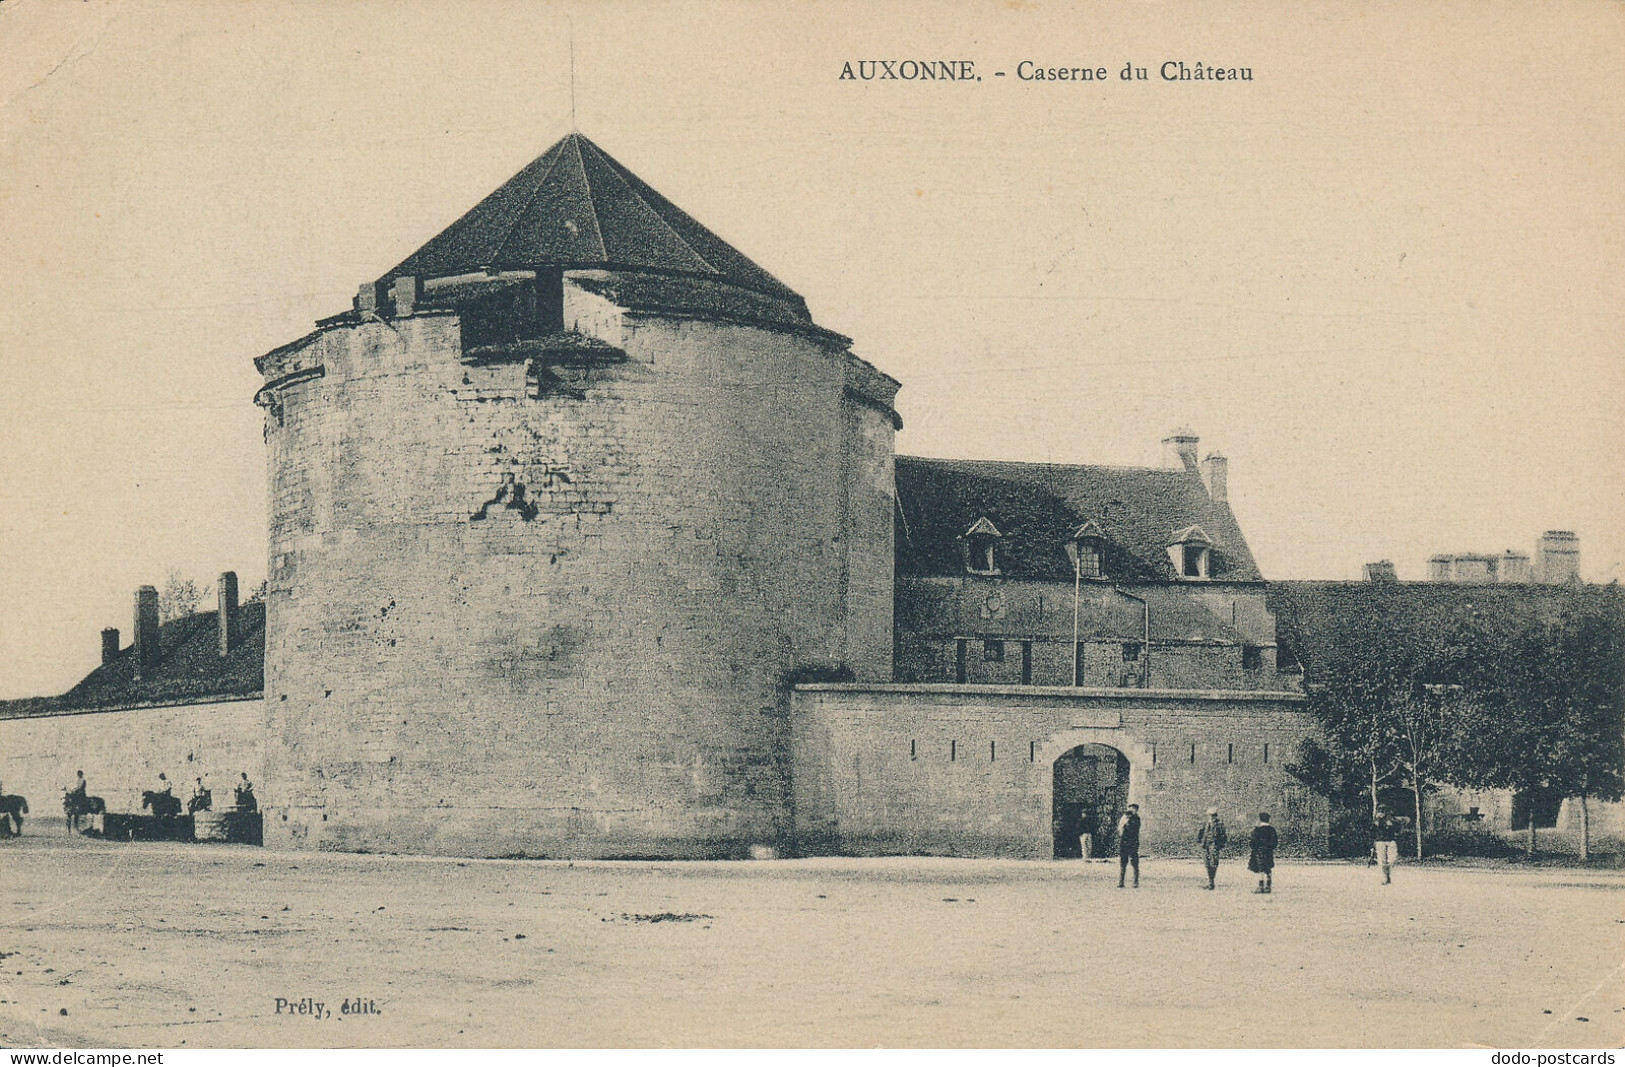 PC46799 Auxonne. Caserne Du Chateau. Prely. 1911. B. Hopkins - Monde